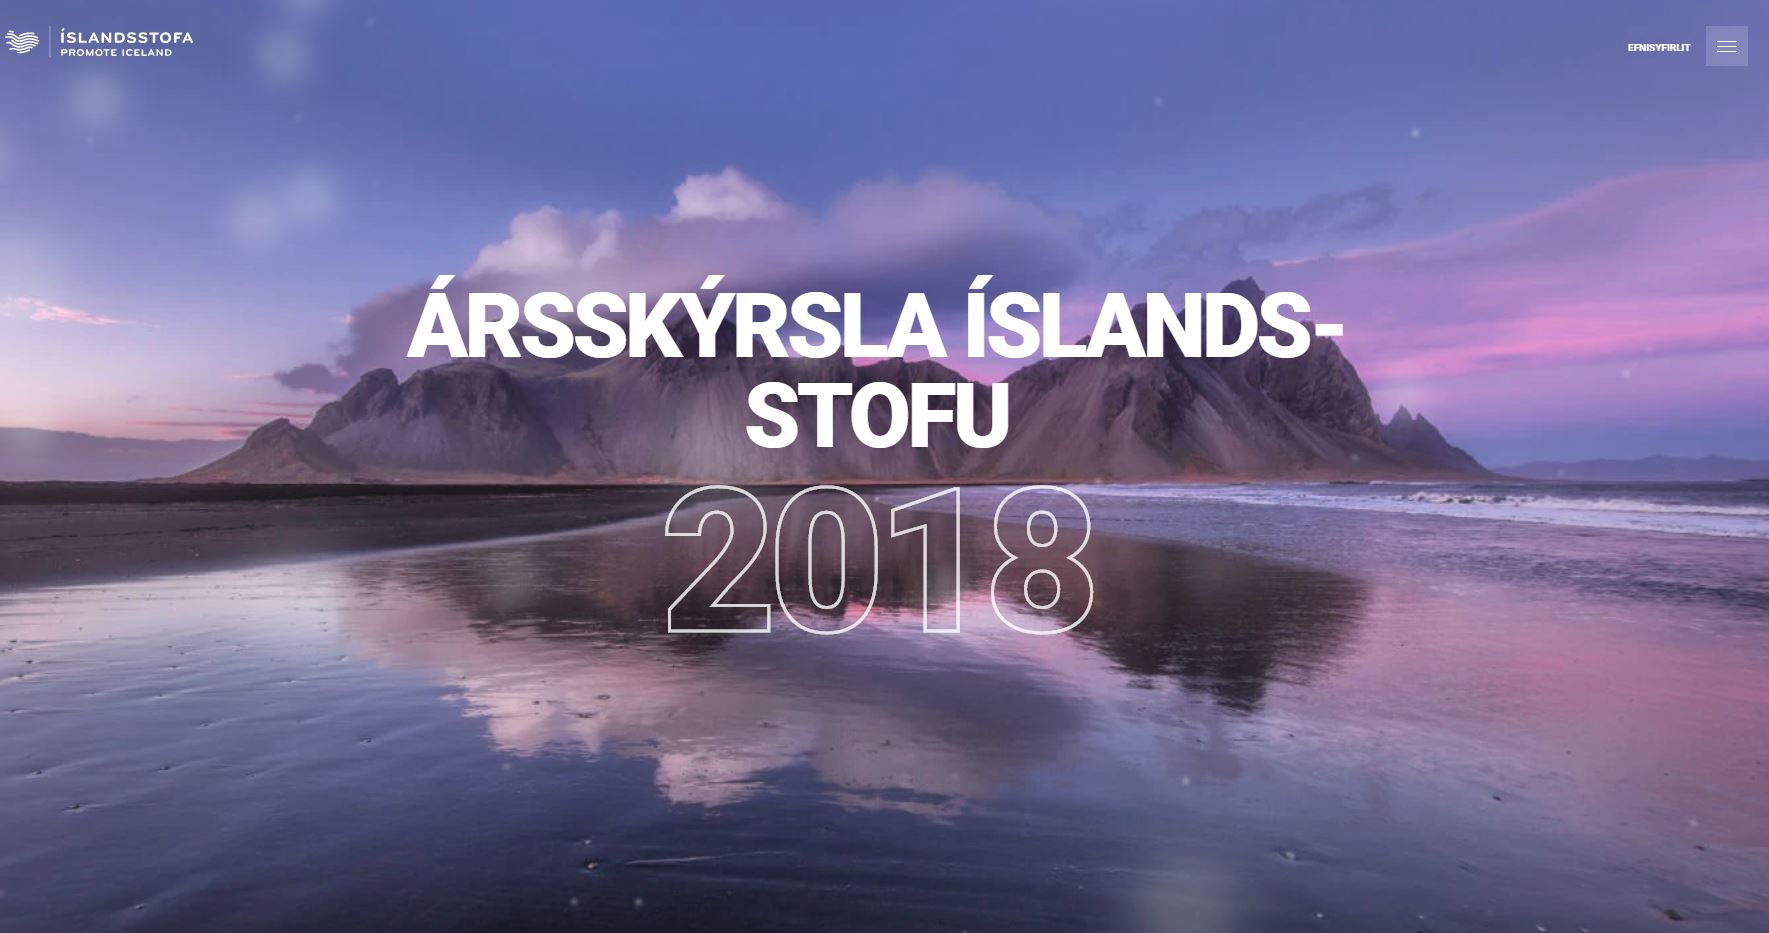 Ársskýrsla Íslandsstofu 2018 er komin út